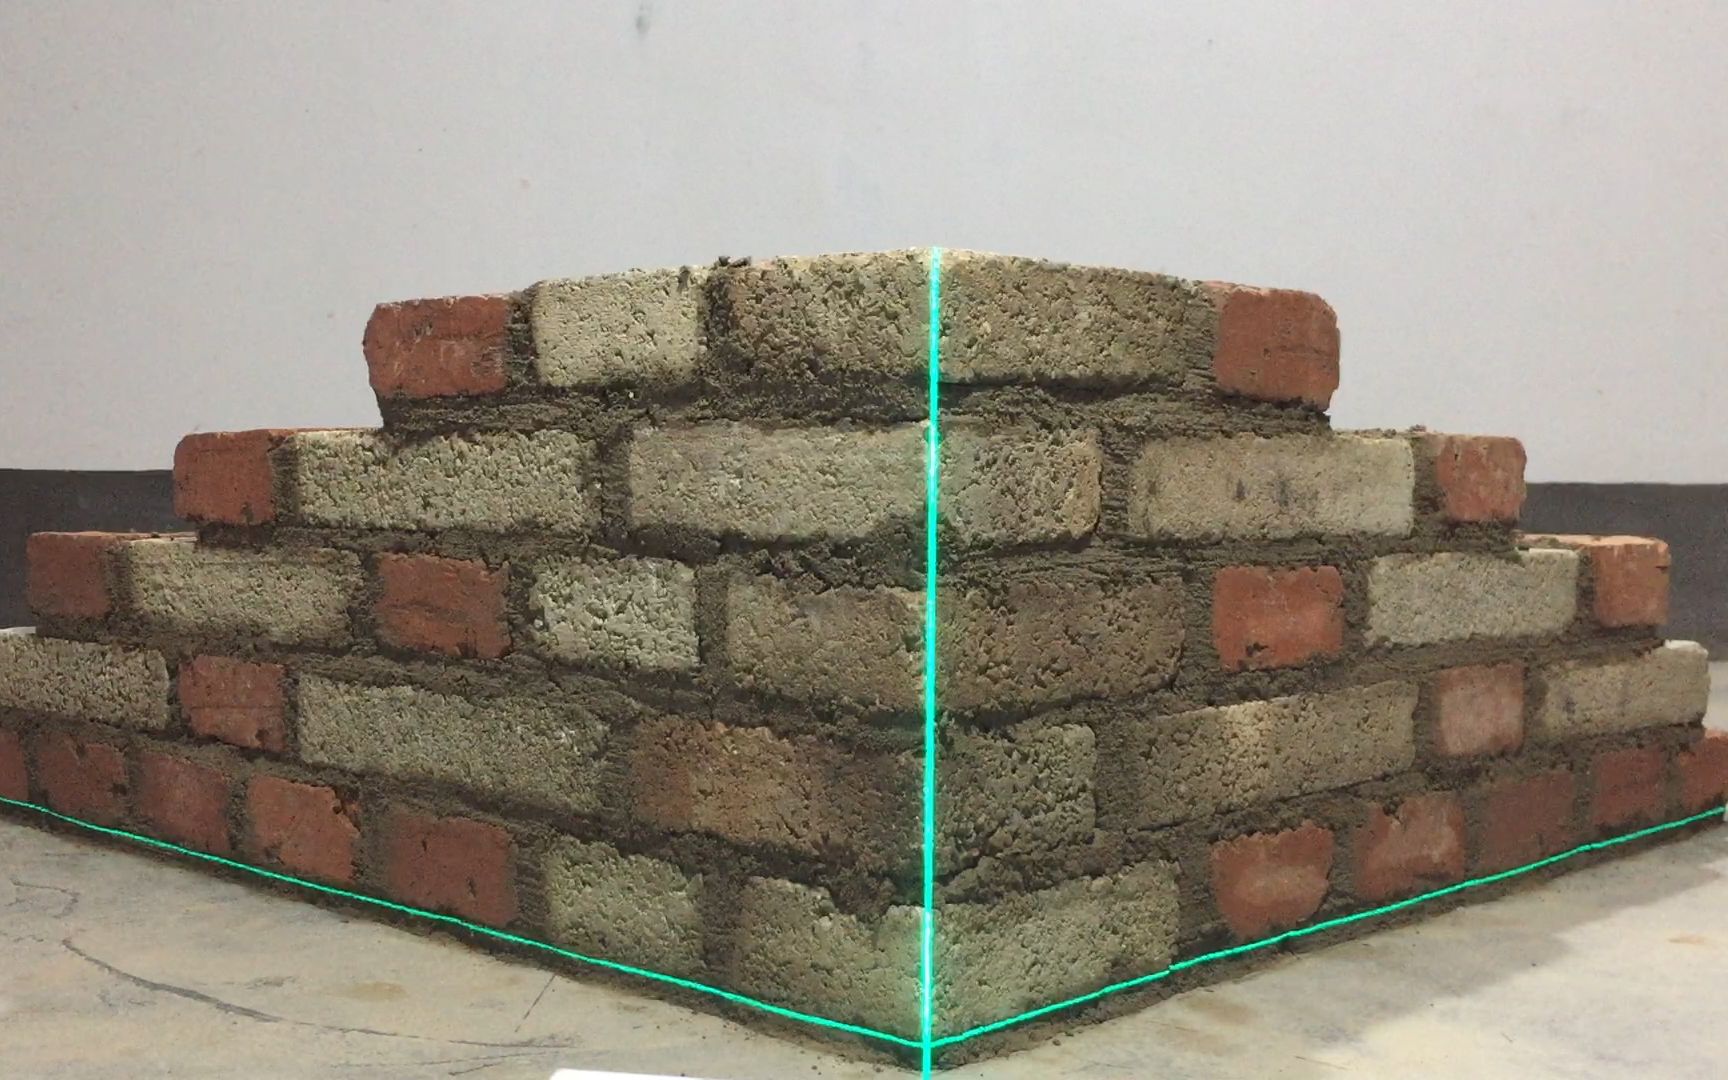 梅花丁砌法,24墙角这样砌更省砖,哪种砌法更合理?